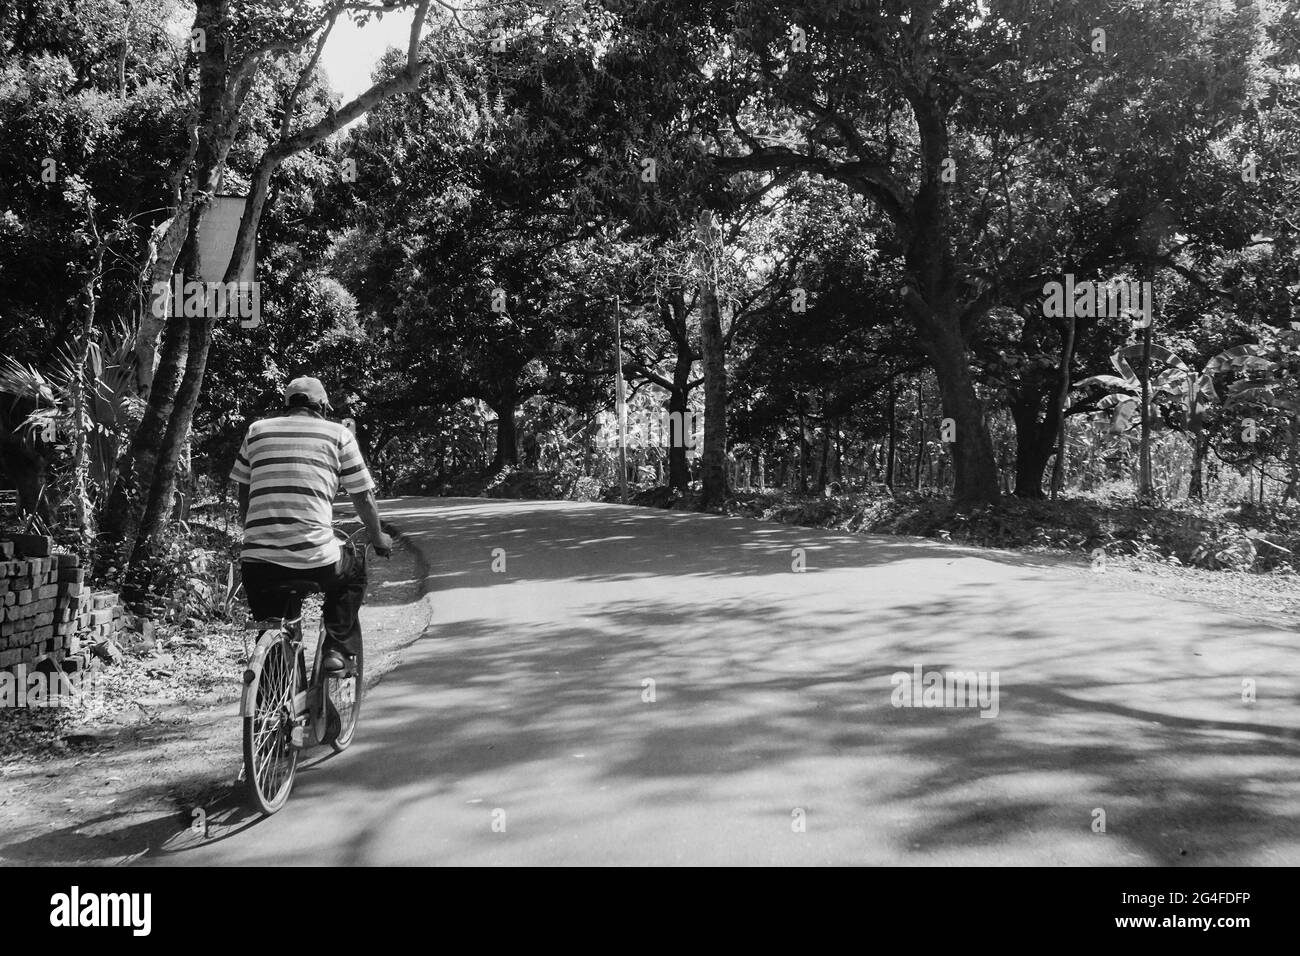 Une route de village ensoleillée avec des arbres des deux côtés et une personne passant sur un vélo. Image en noir et blanc. Banque D'Images